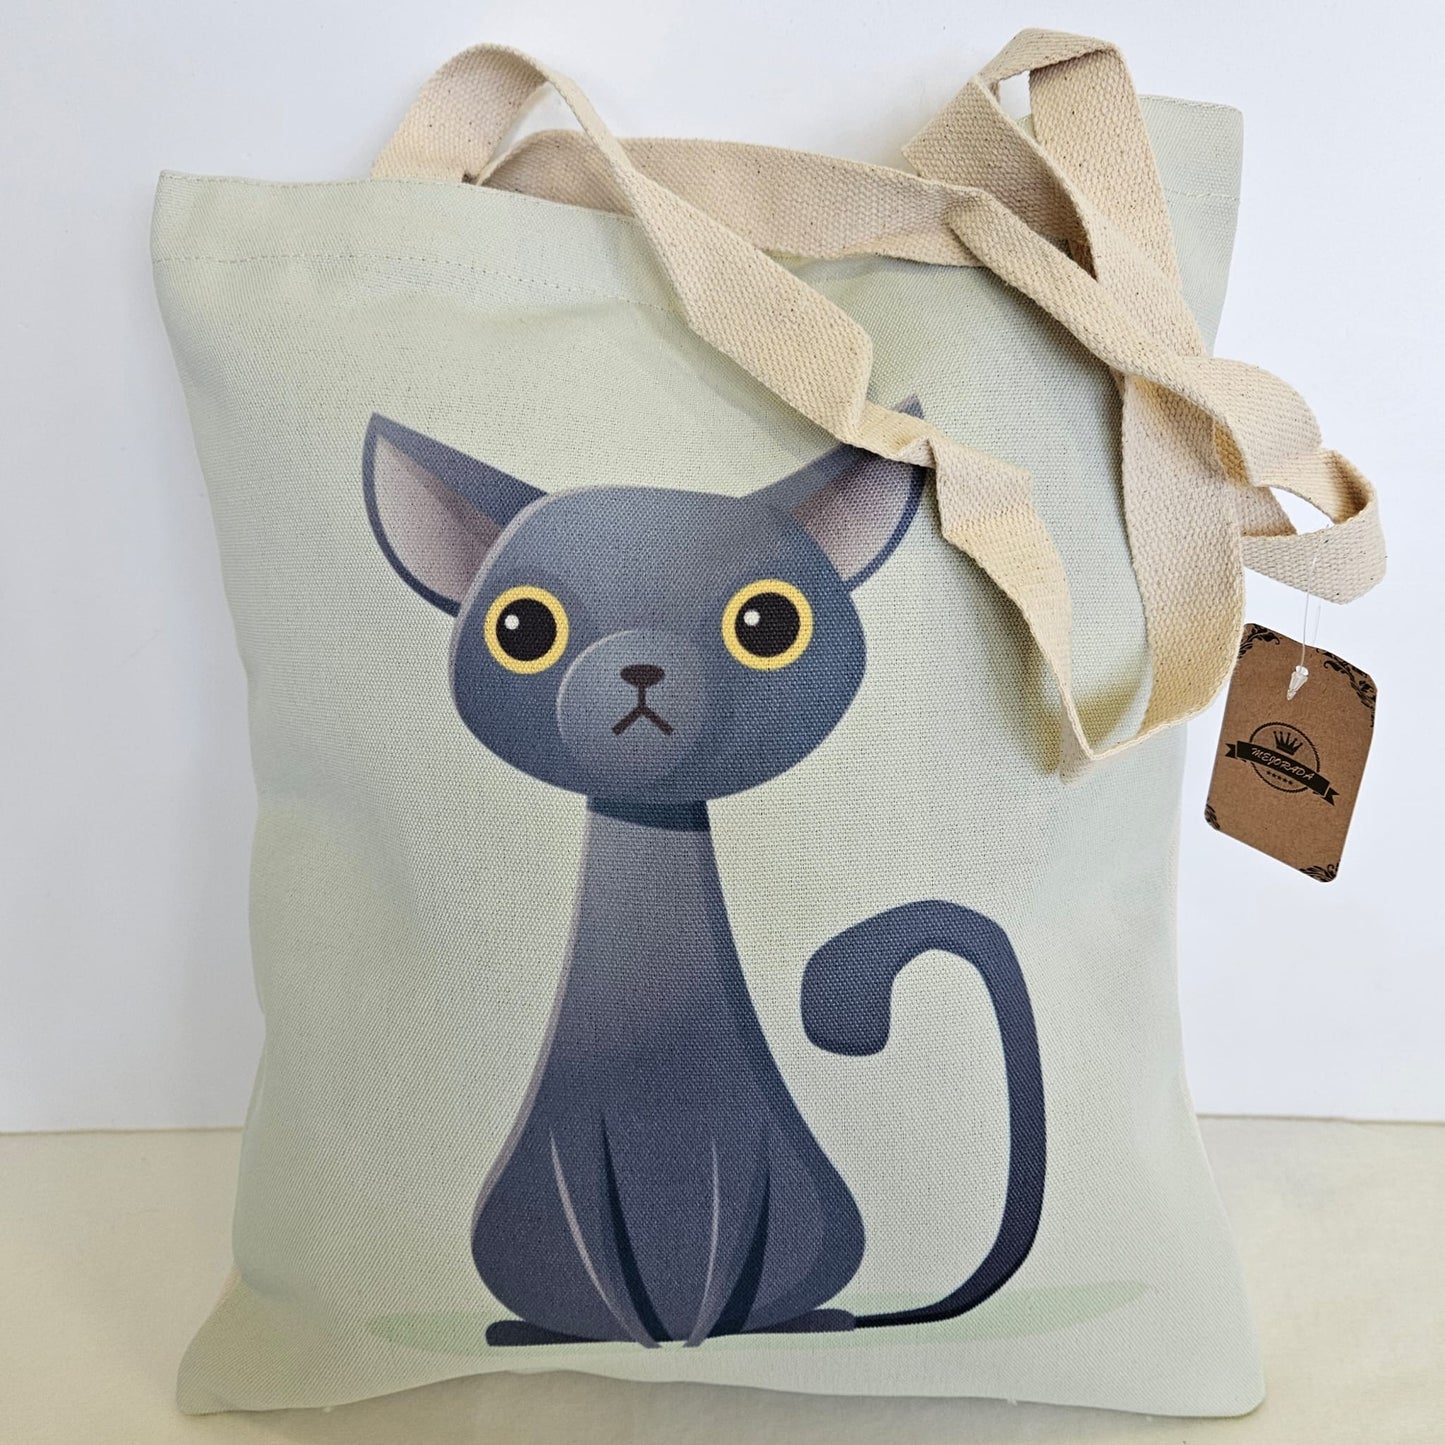 Bolsa tote bag de tela estampado gatito con fondo beige